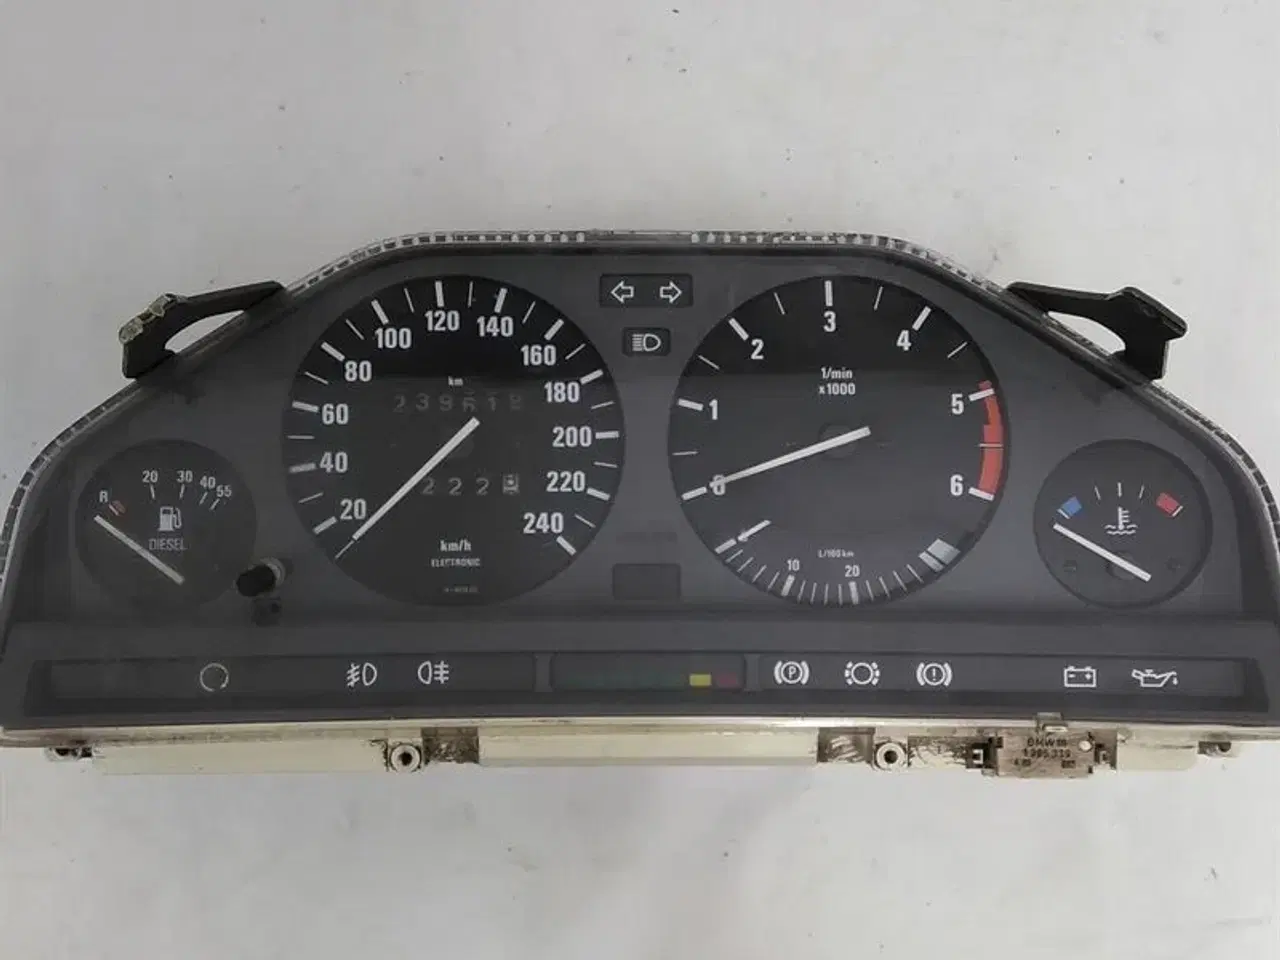 Billede 1 - Instrumentkombi MotoMeter Brugt 239617 km C51422 BMW E30